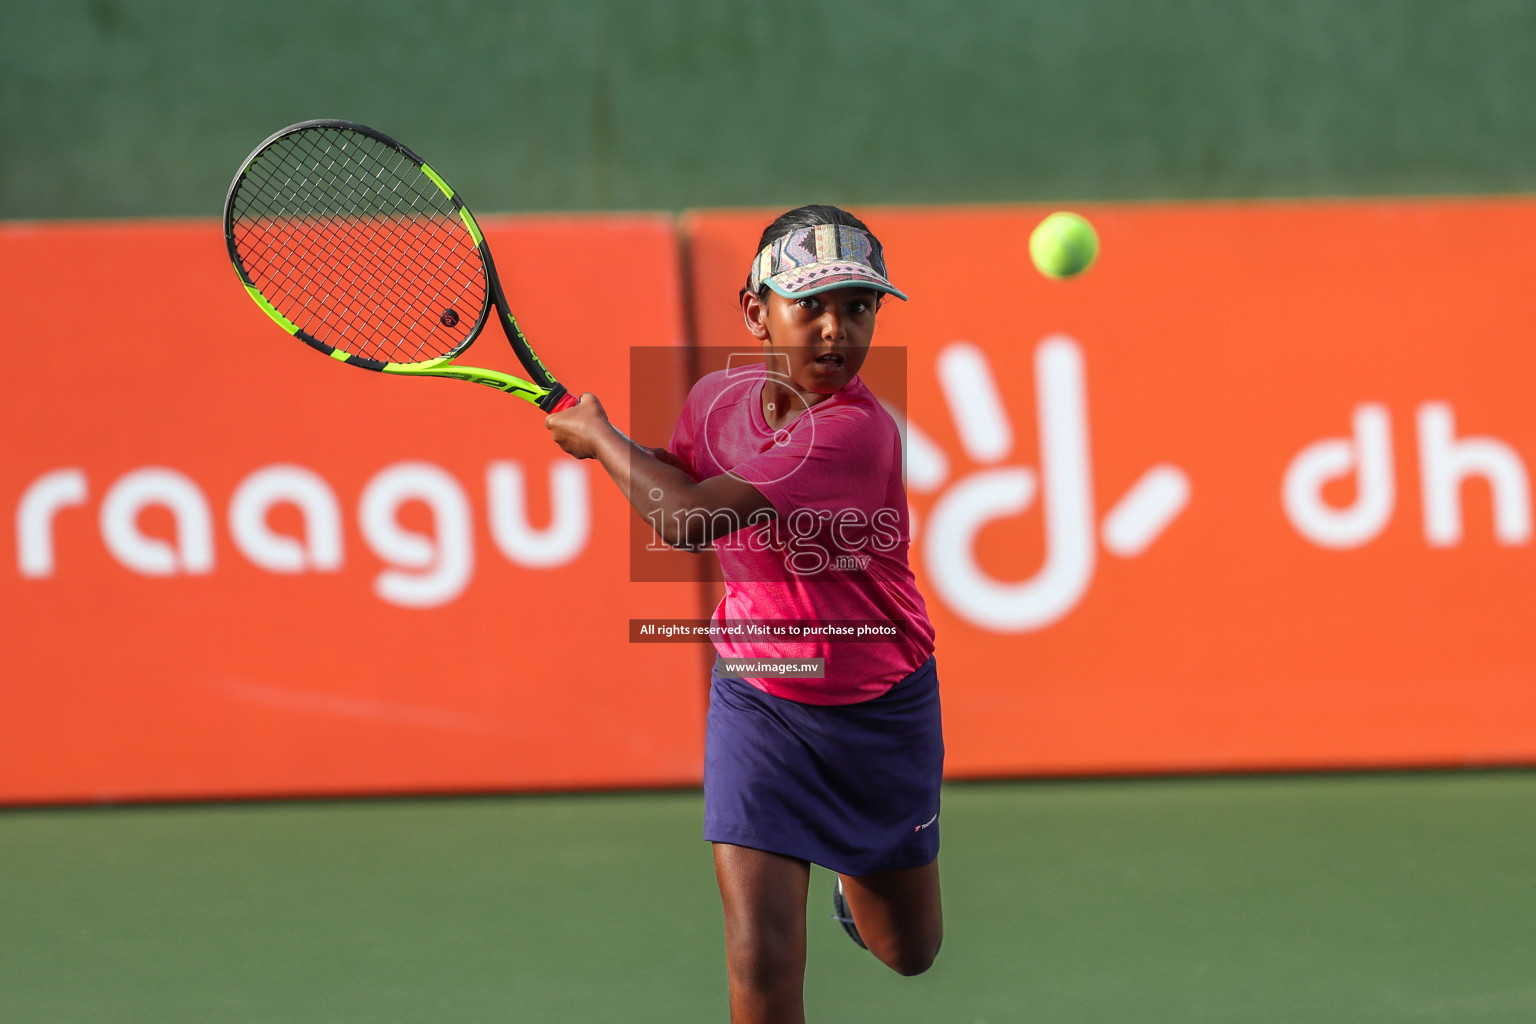 Maldives Tennis Open 2019, 8th Sep 2019, Male, Photos: Suadh Abdul Sattar/ Images.mv